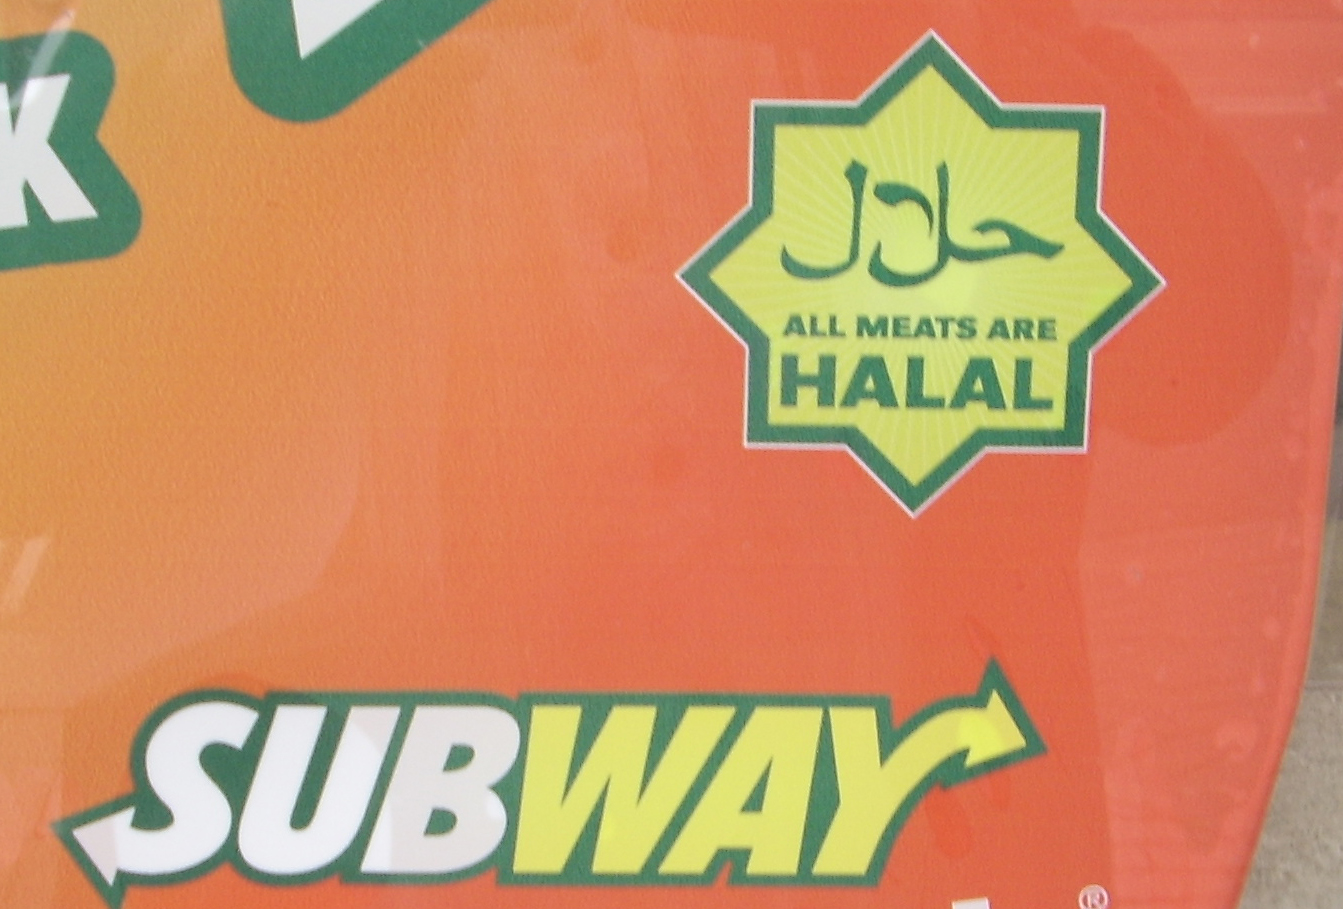 subway+halal+thumb.jpg